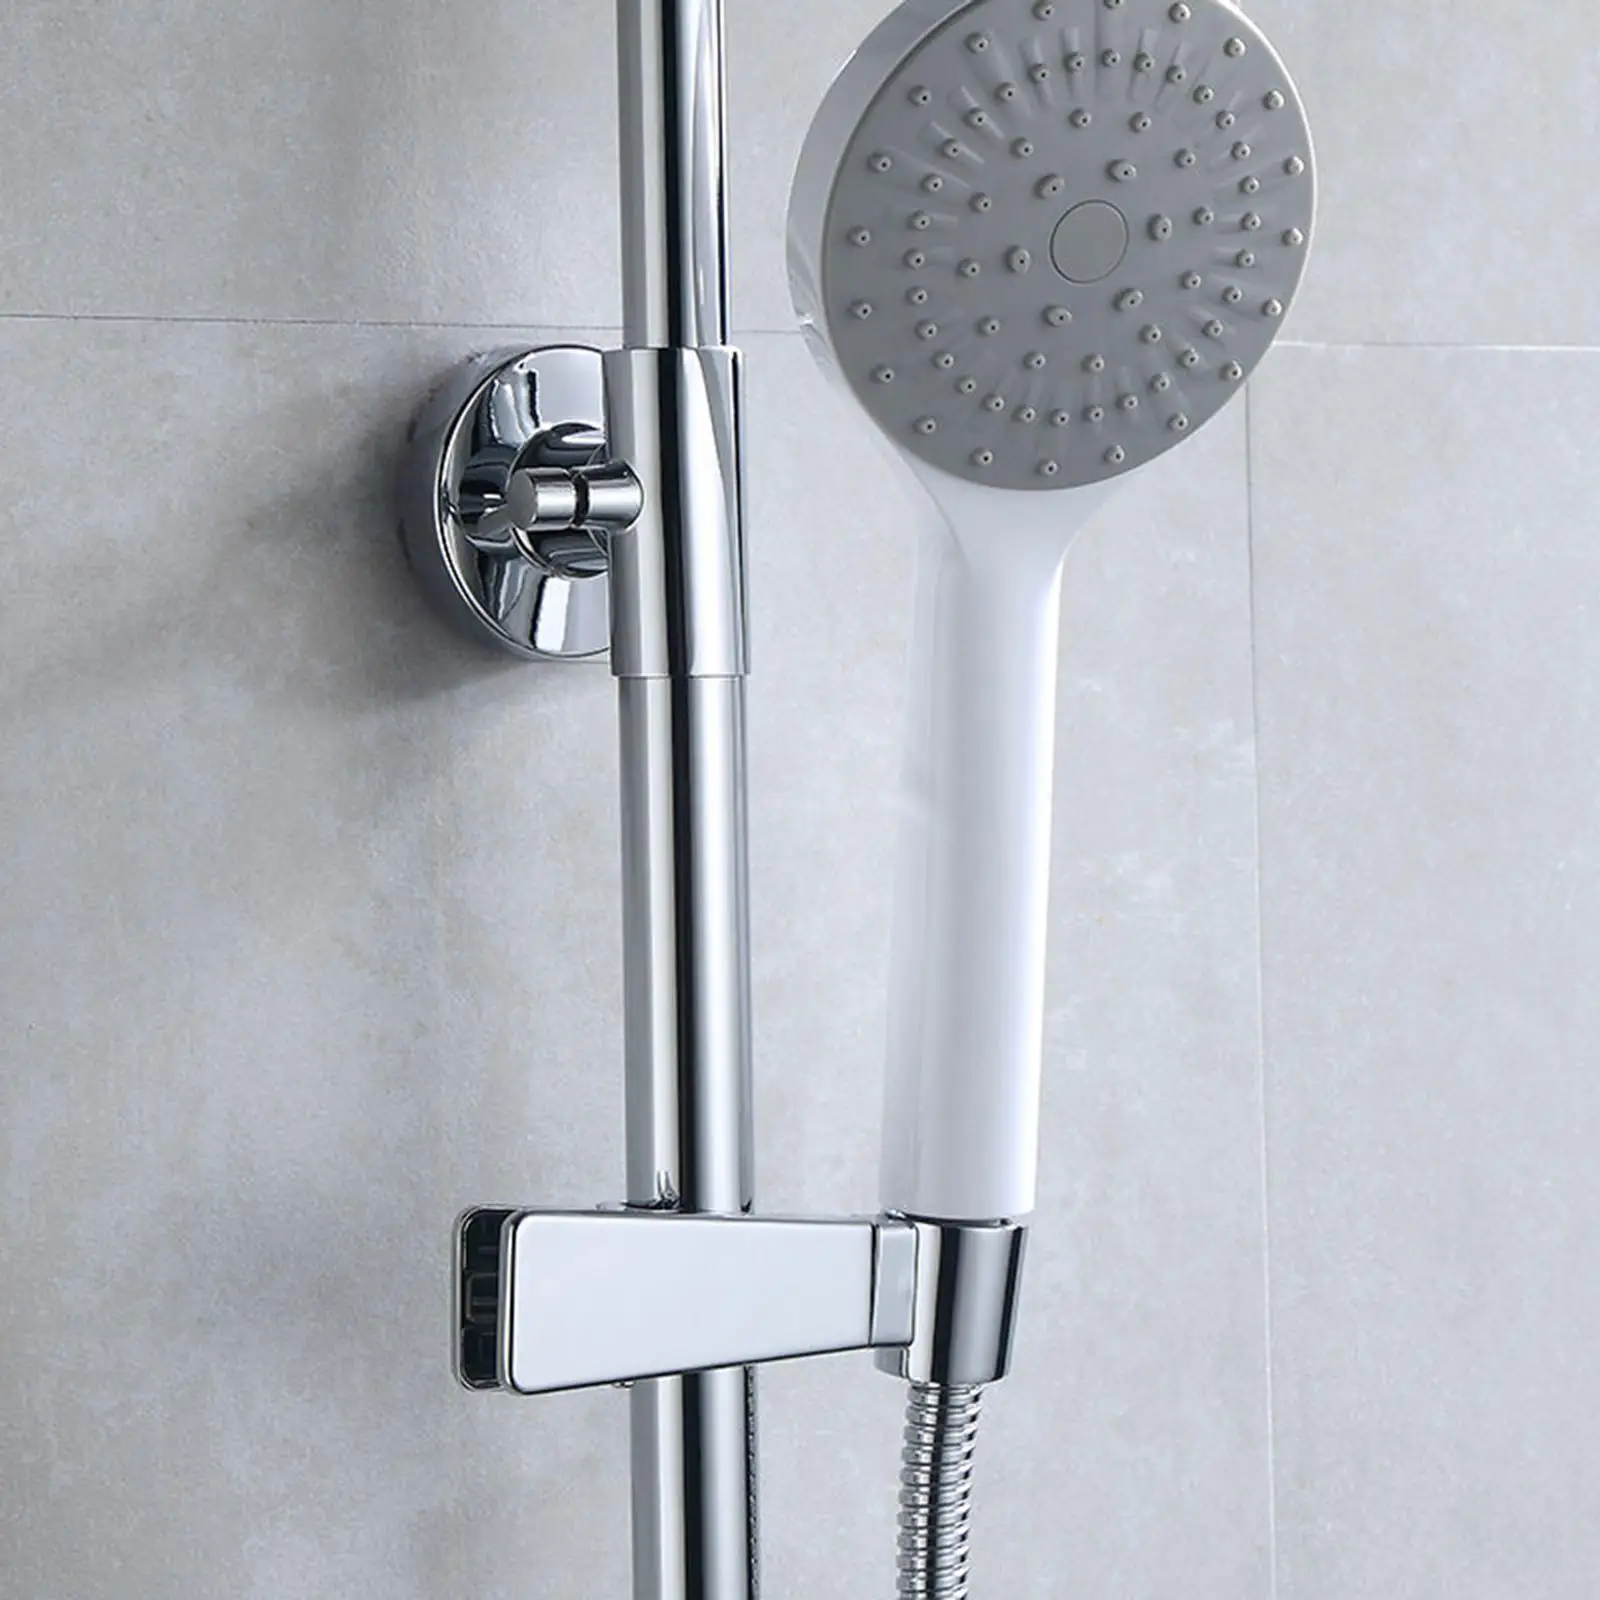 Adjustable Shower Bracket Shower 45 Degree Rotation Non Slip Design Shower Bracket for Hand Shower Head Slide Bar